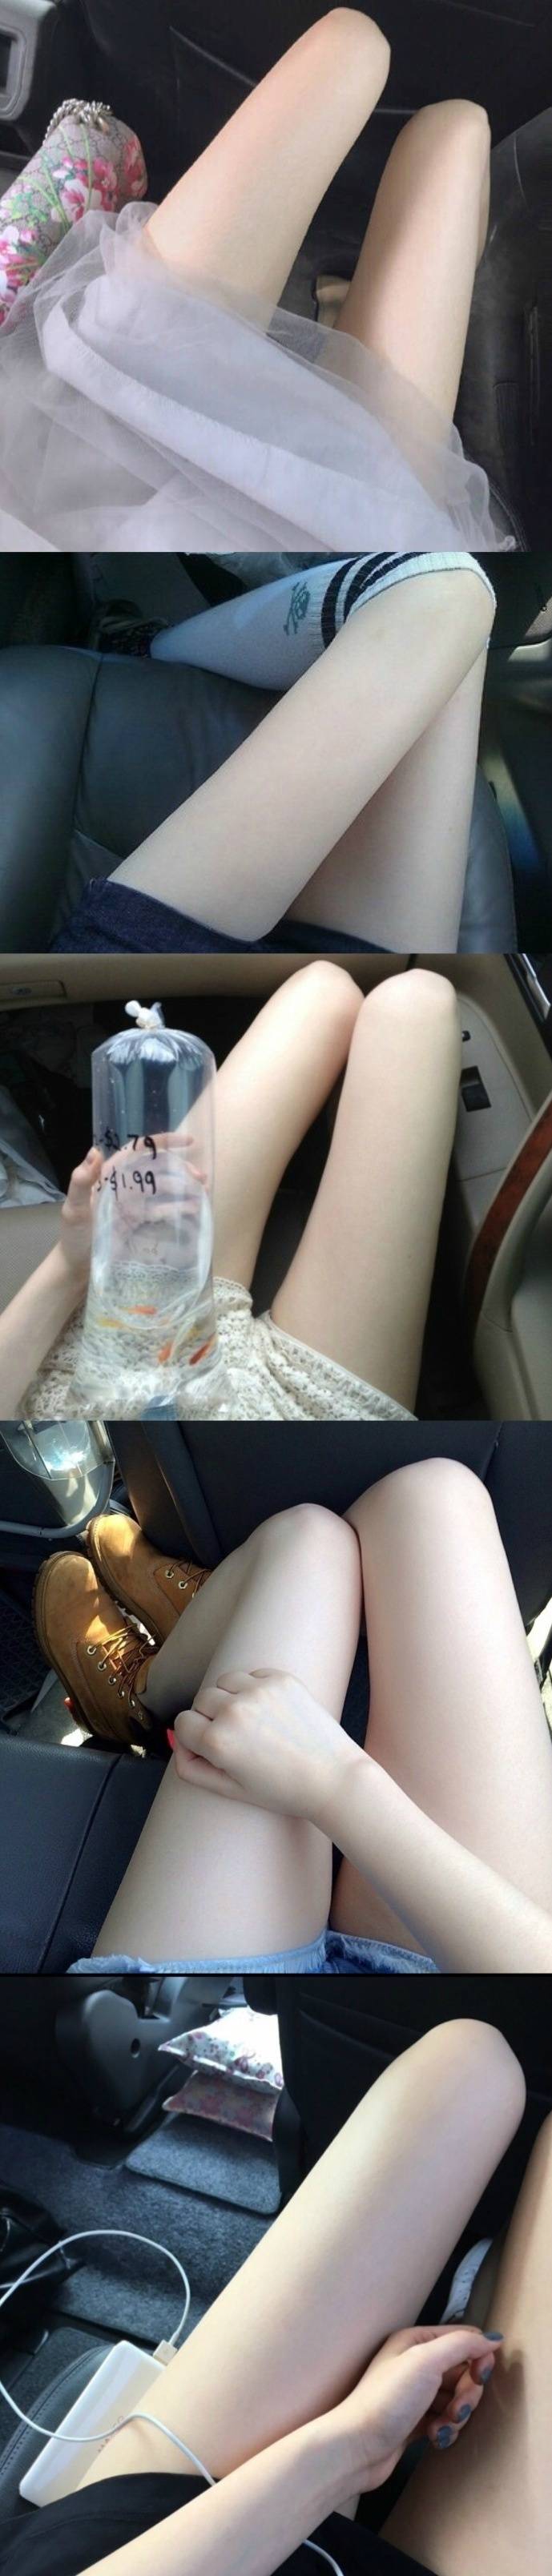 少女的腿：女孩啊 真的很让人着迷的生物~ ​ ​​​​